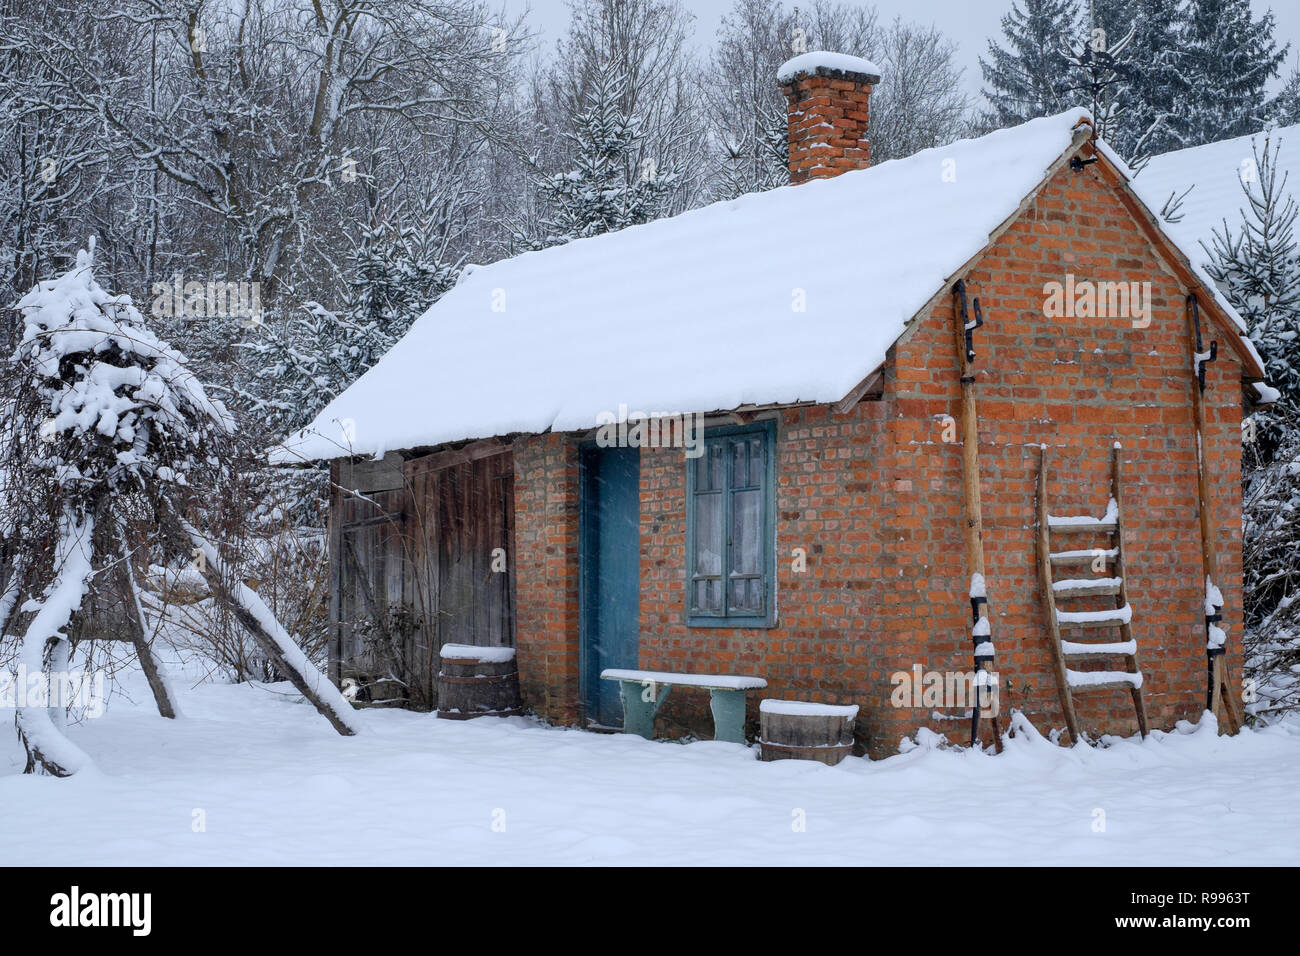 Traditionelle Sommer Haus in einer ländlichen ungarischen Dorf im Schnee von einem frischen Schneesturm zala Ungarn Nebengebäude Stockfoto